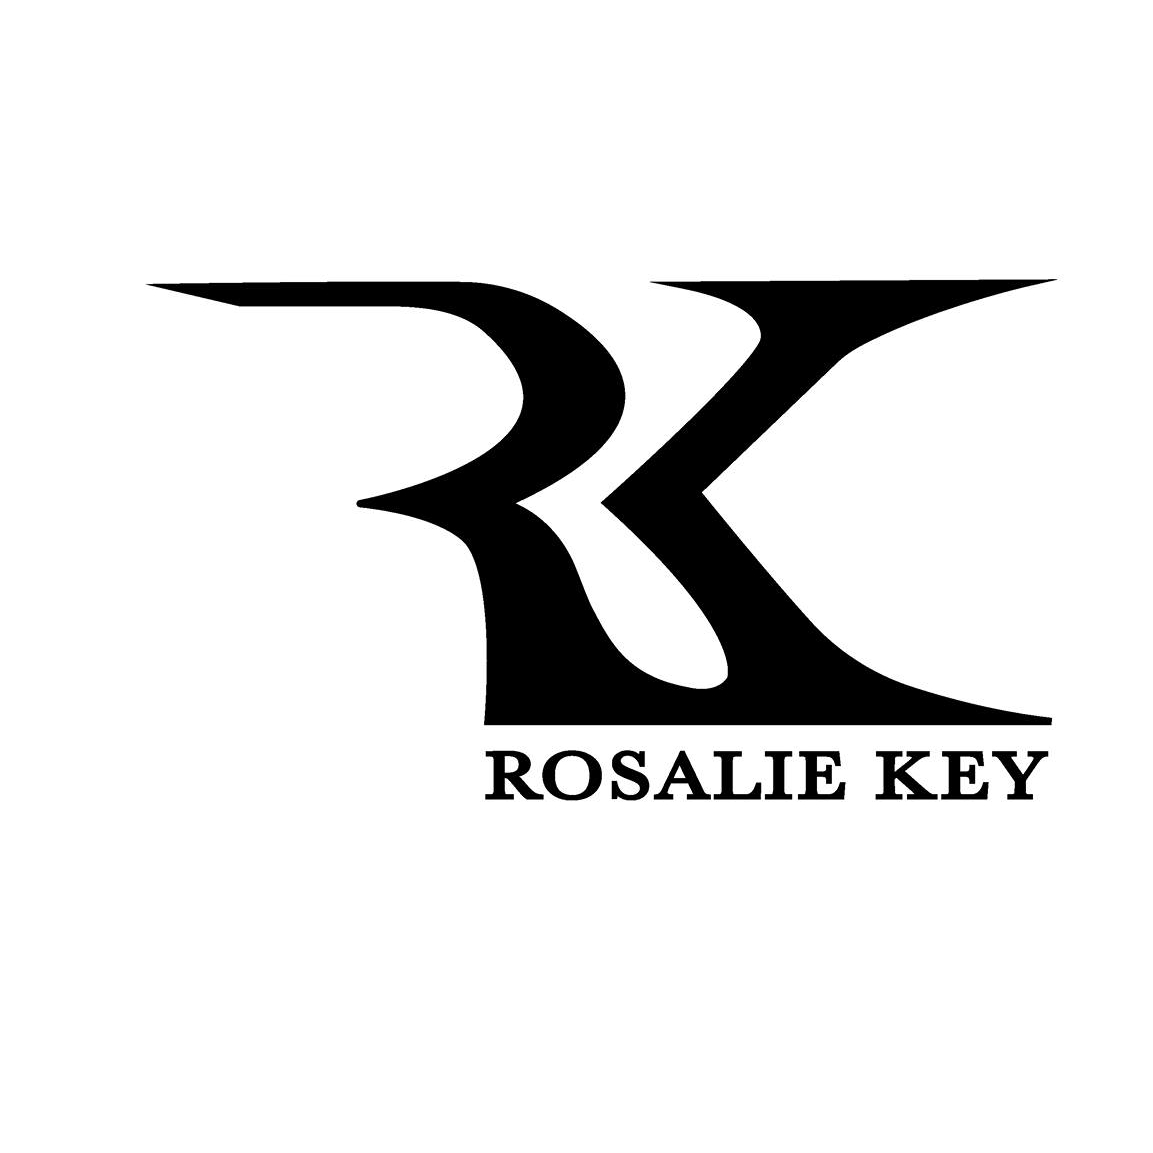 ROSALIE KEY